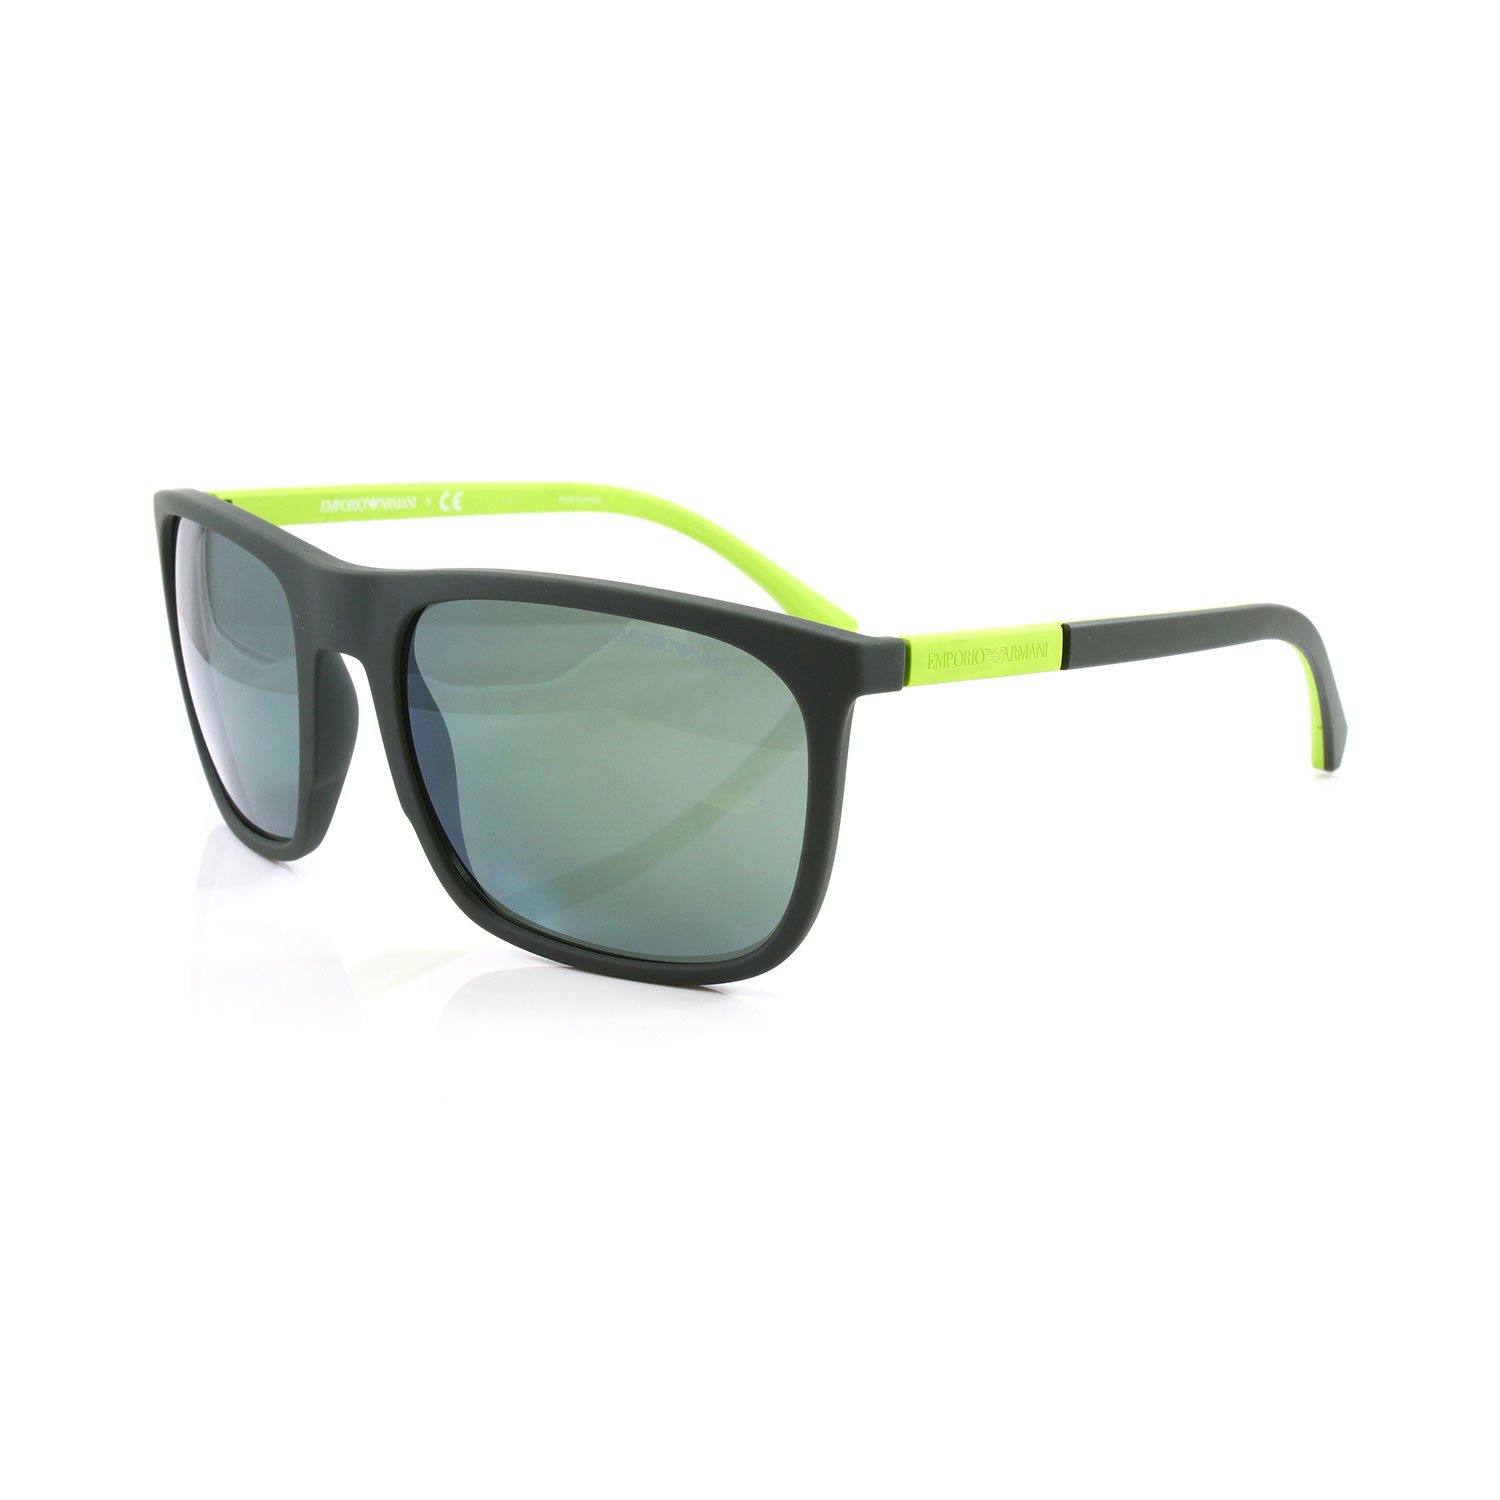 emporio armani green sunglasses